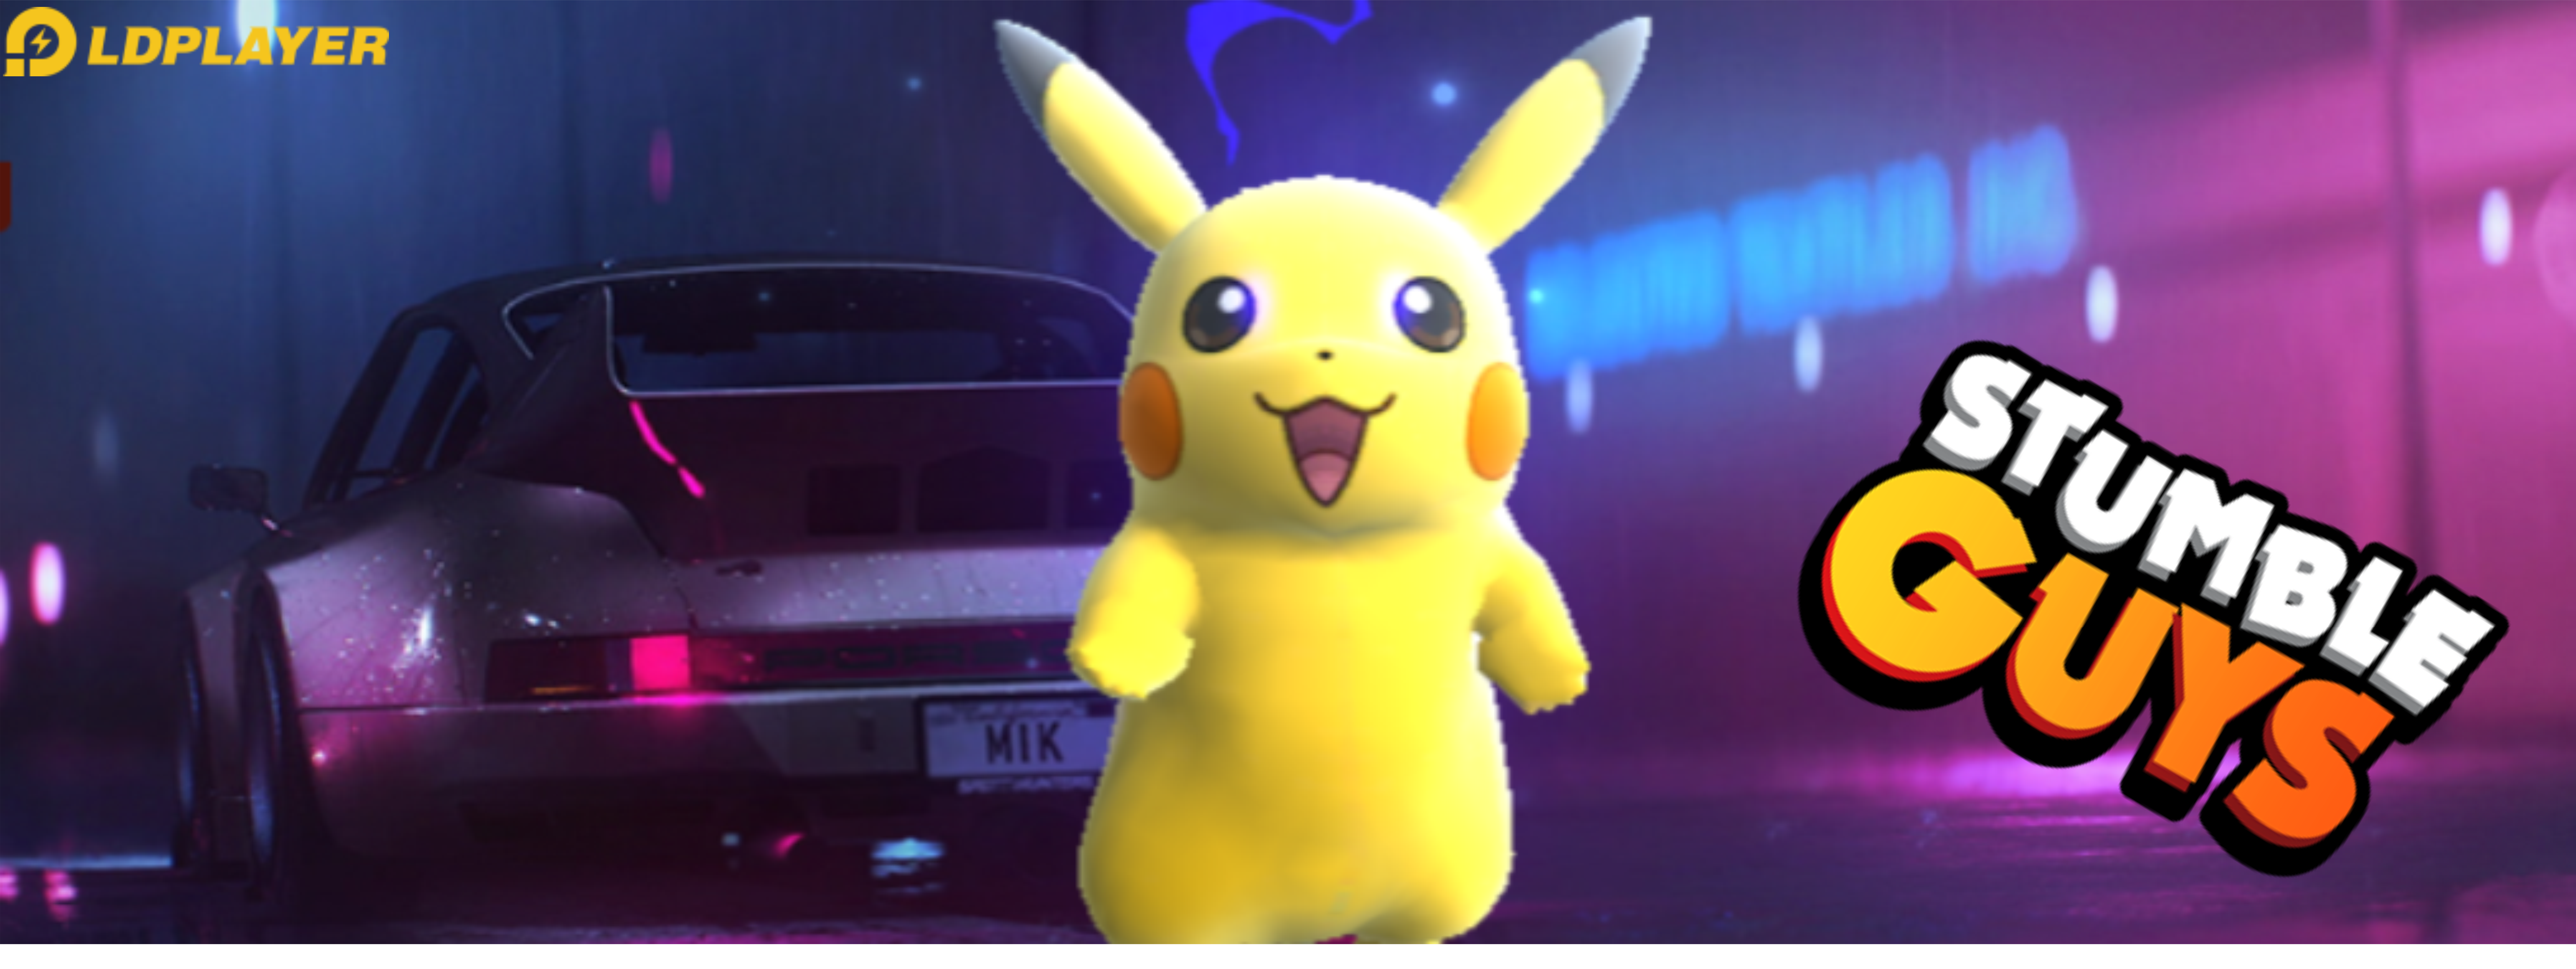 Ada Pikachu di Game Stumble Guys! Yuk Cobain Mod Tekstur Pack Tanpa di-Banned dengan LDPLayer 9!